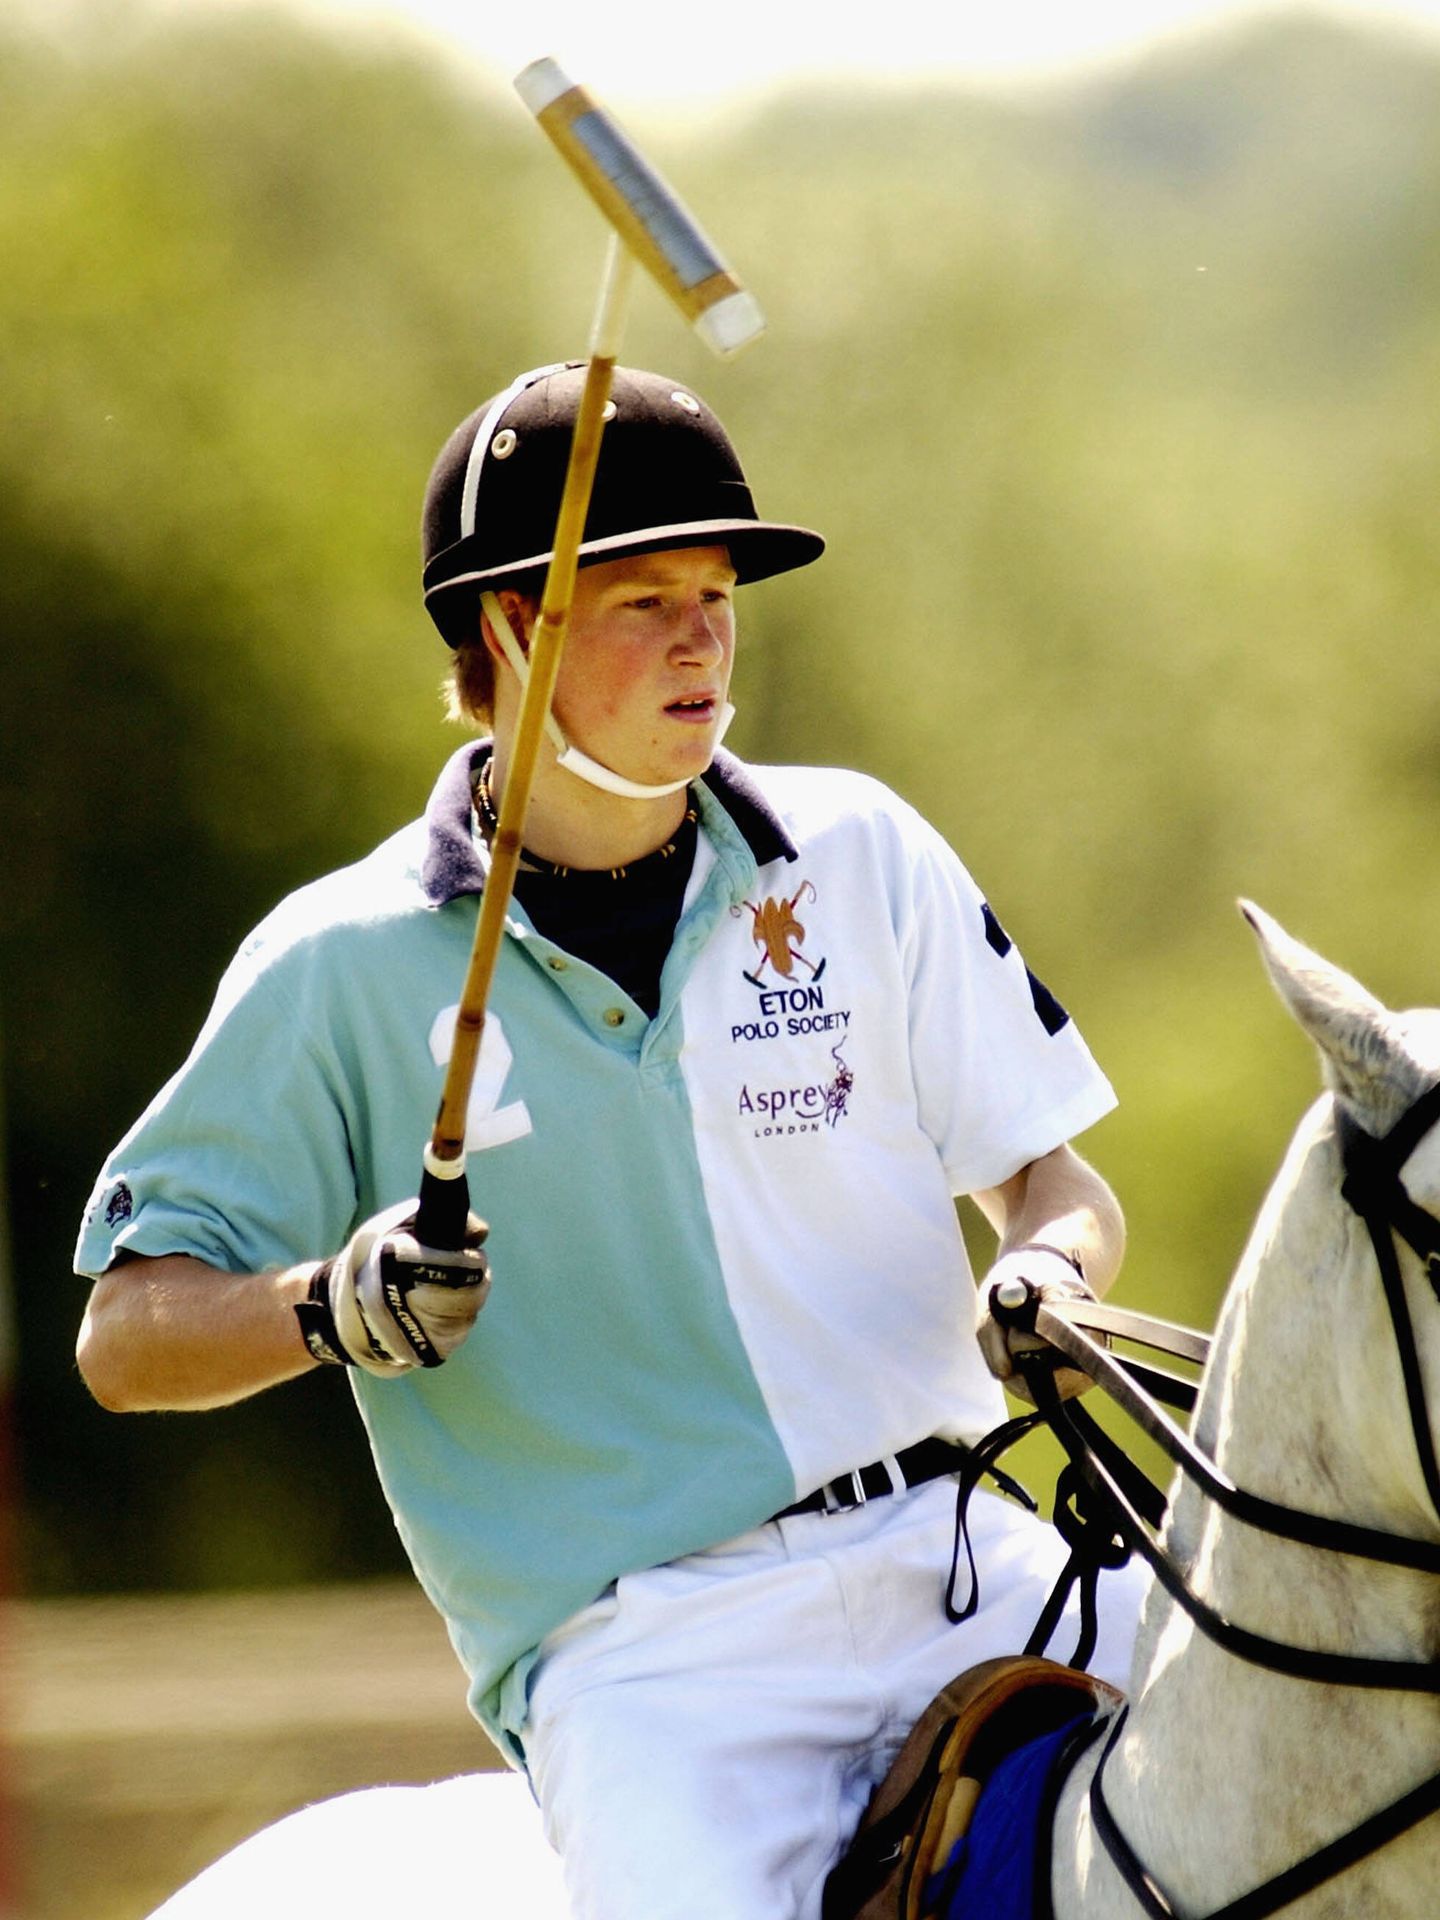 Harry, jugando a polo cuando estudiaba en Eaton. (Getty/Graeme Robertson)